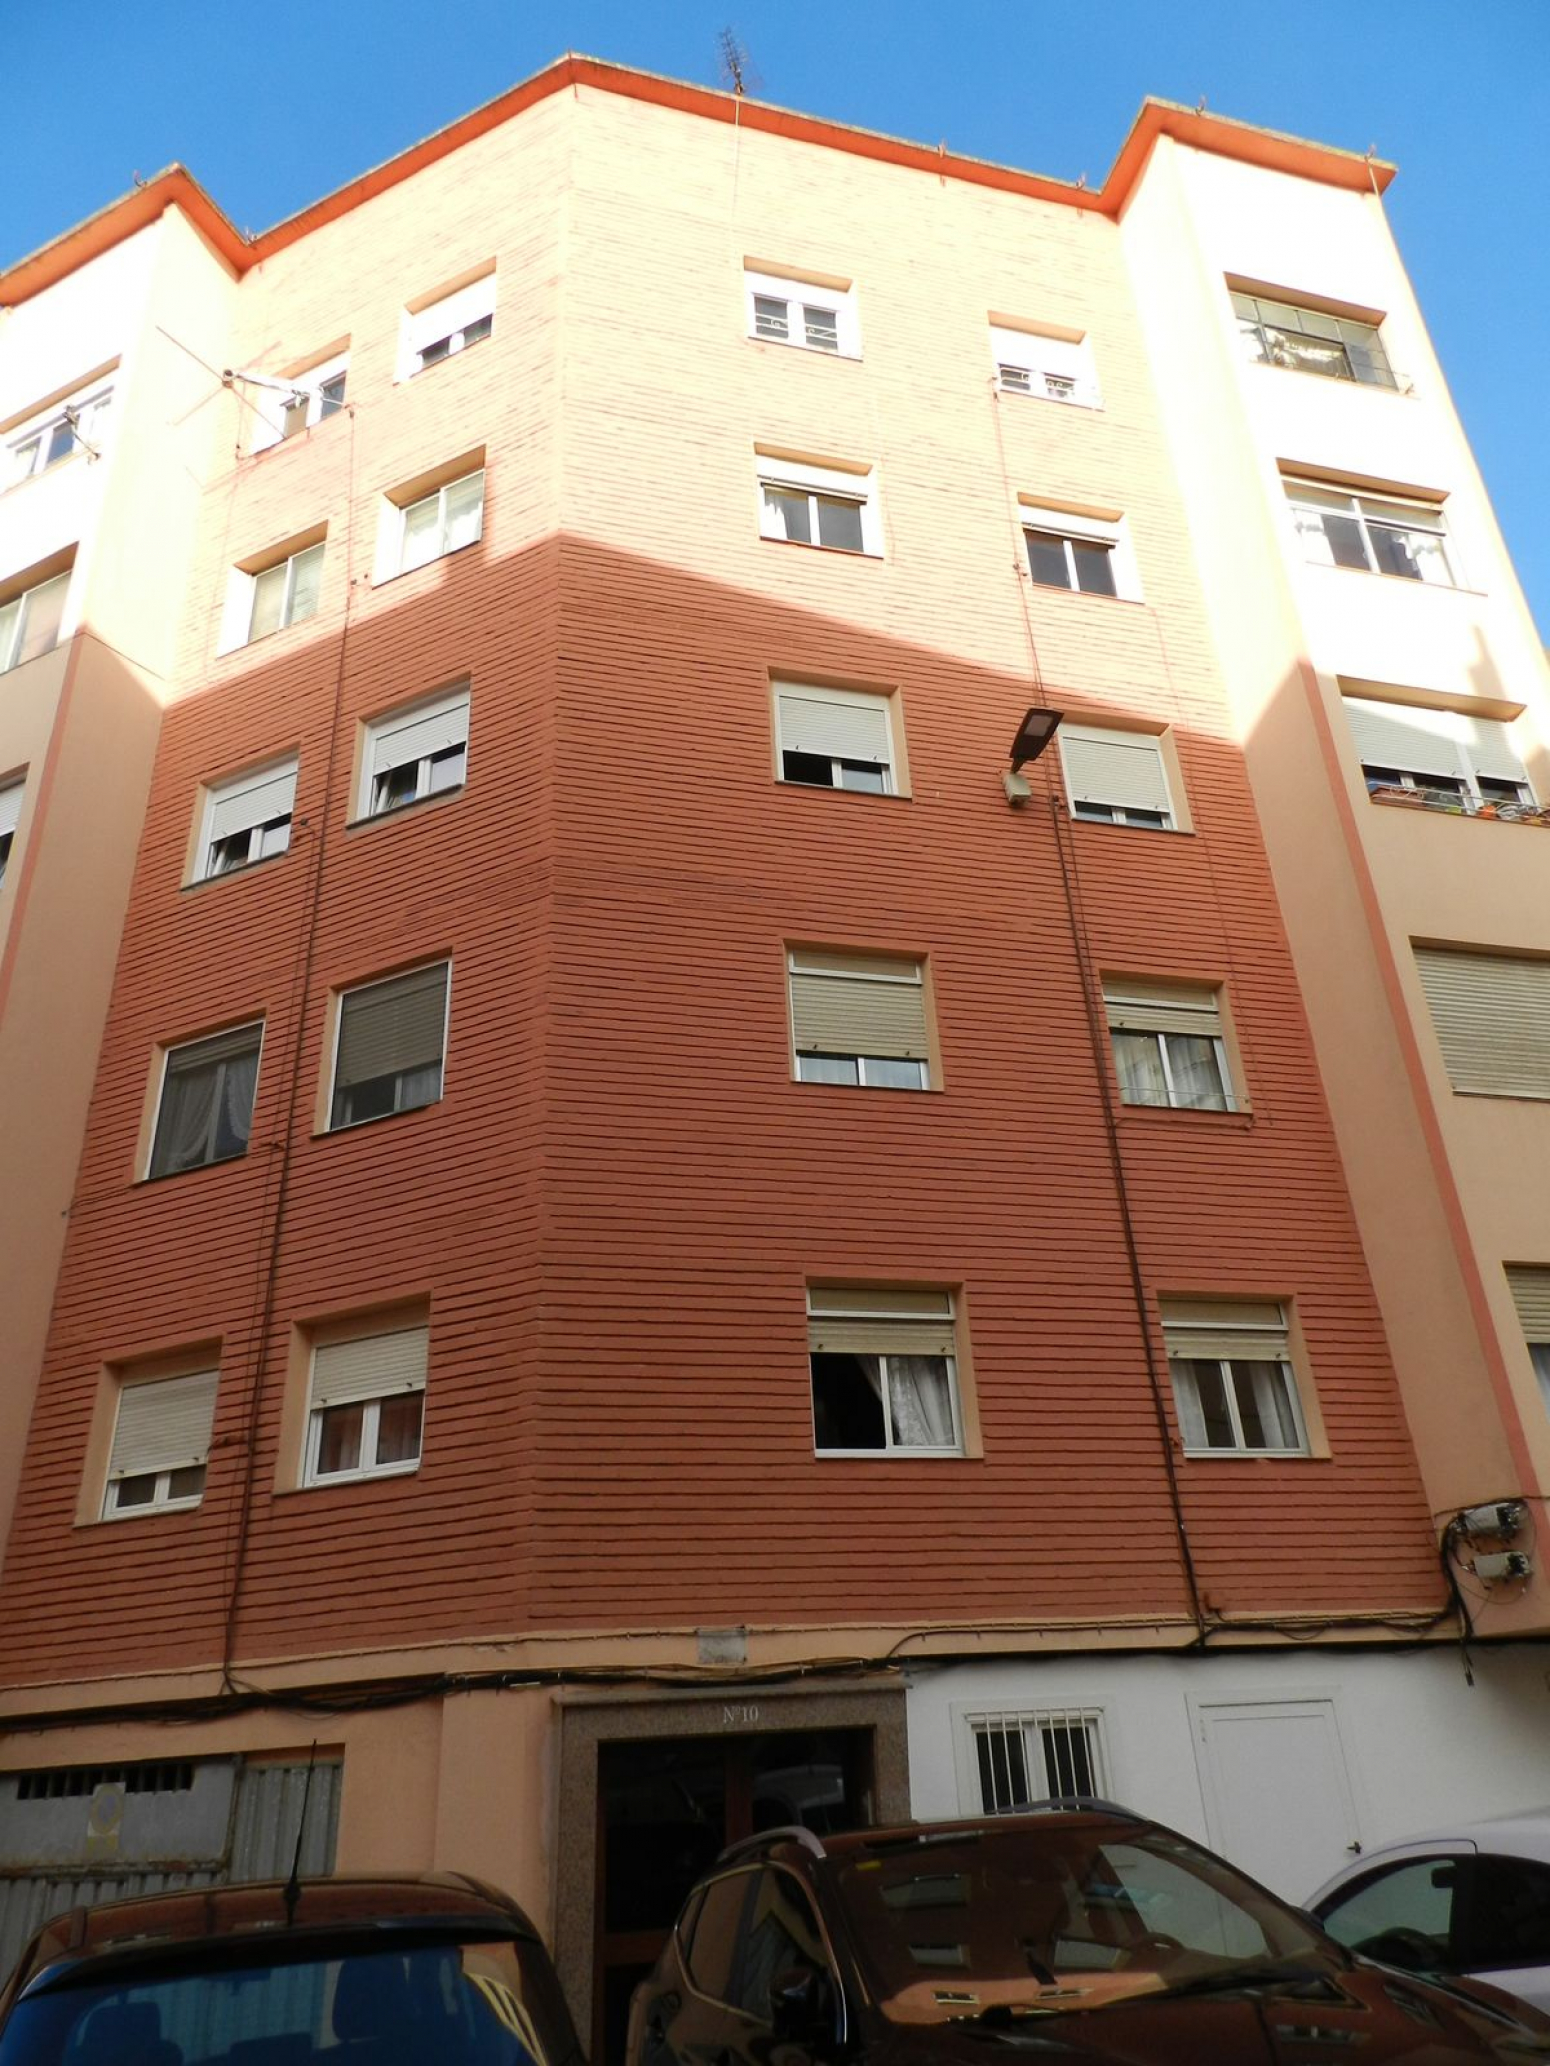 Altamira 21 - Agencia Inmobiliaria